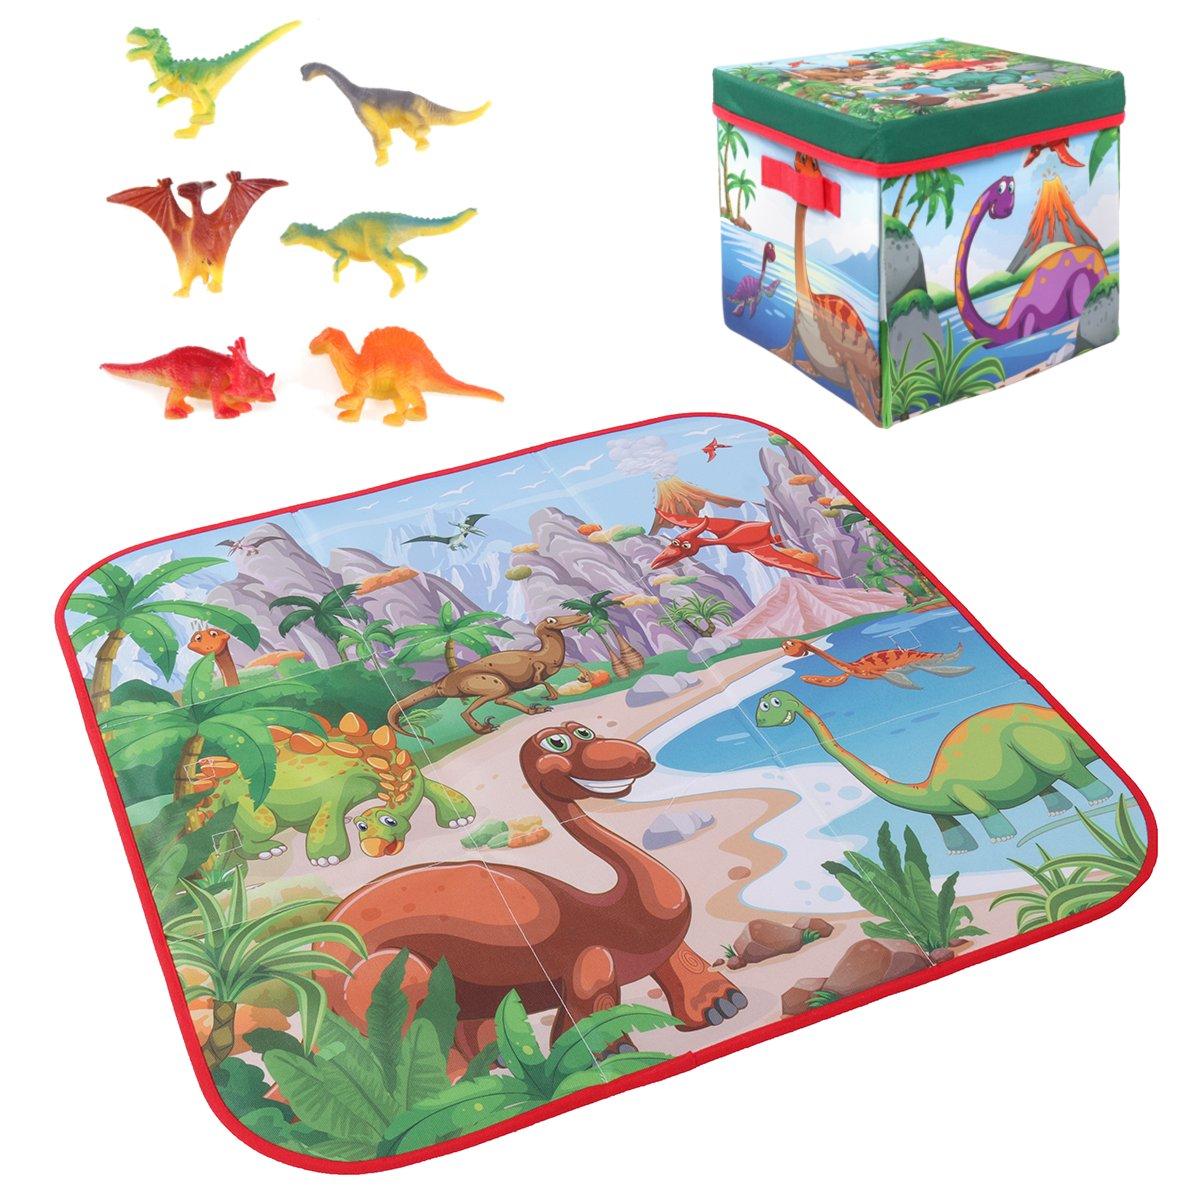 Tappeto da gioco per bambini a tema cartone animato di 72x72 cm + 6 giocattoli di dinosauri, scatola pieghevole quadrata per il campeggio e il picnic, tappeto per il gattonamento del bambino.